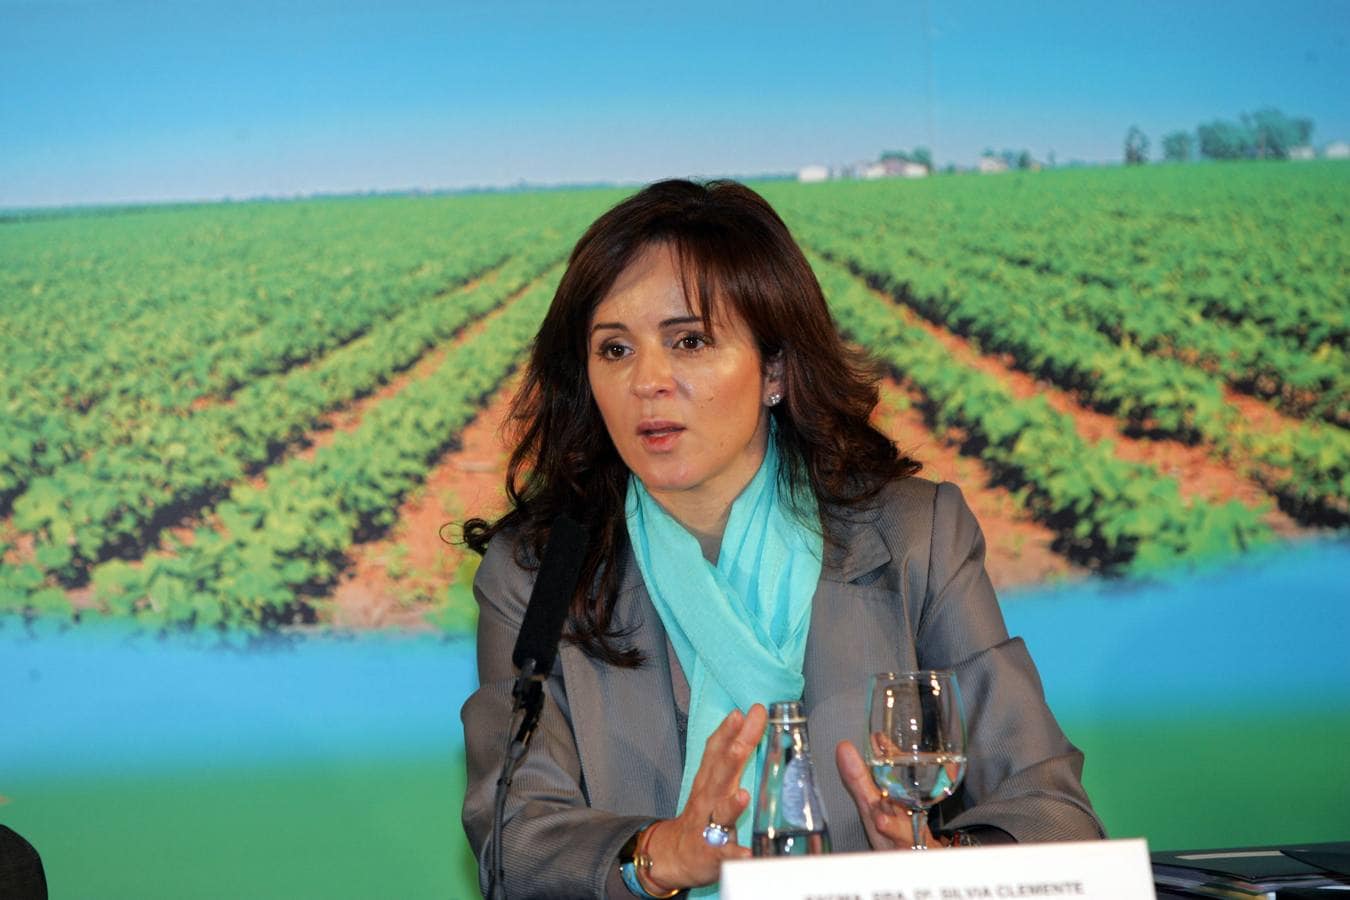 Silvia Clemente de consejera de Medio Ambiente a consejera de Cultura y Turismo a consejera de Agricultura a presidir las Cortes de Castilla y León